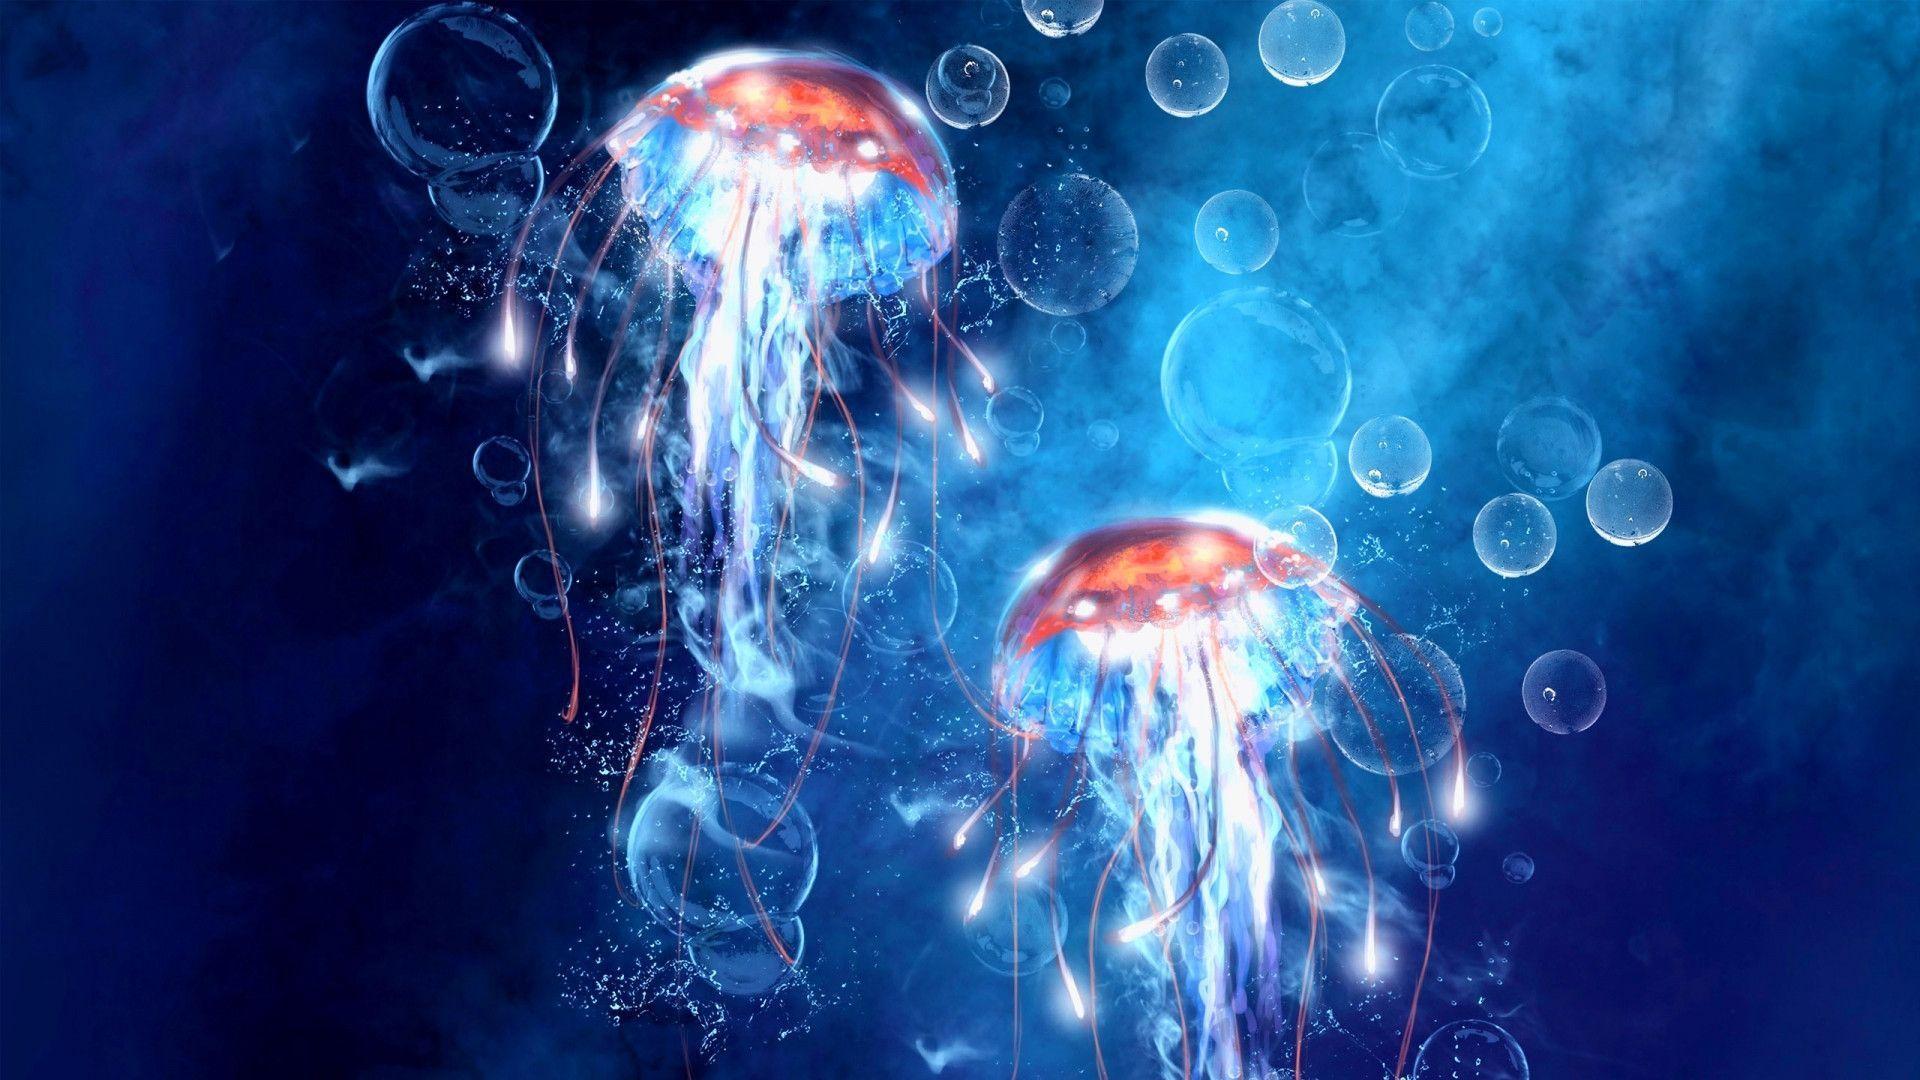 HD wallpaper jellyfish pink aquatic organisms animals  Wallpaper Flare